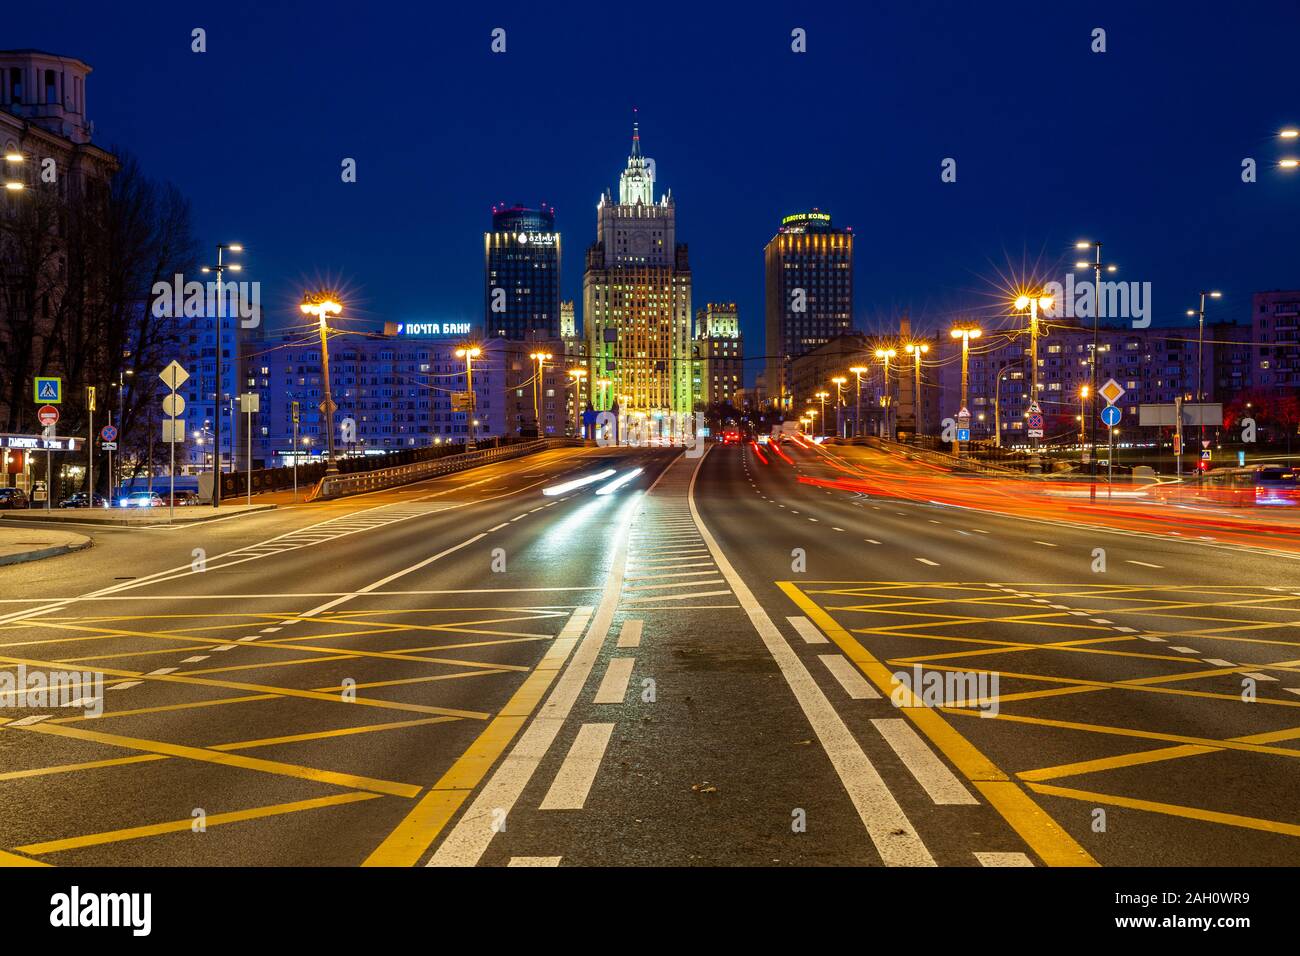 Moskau, Russland - 15. November 2018: Die Straße, die zum Ministerium für Auswärtige Angelegenheiten der Russischen Föderation in der Nacht auf den 15. November 2018 in Moskau, Russland. Stockfoto